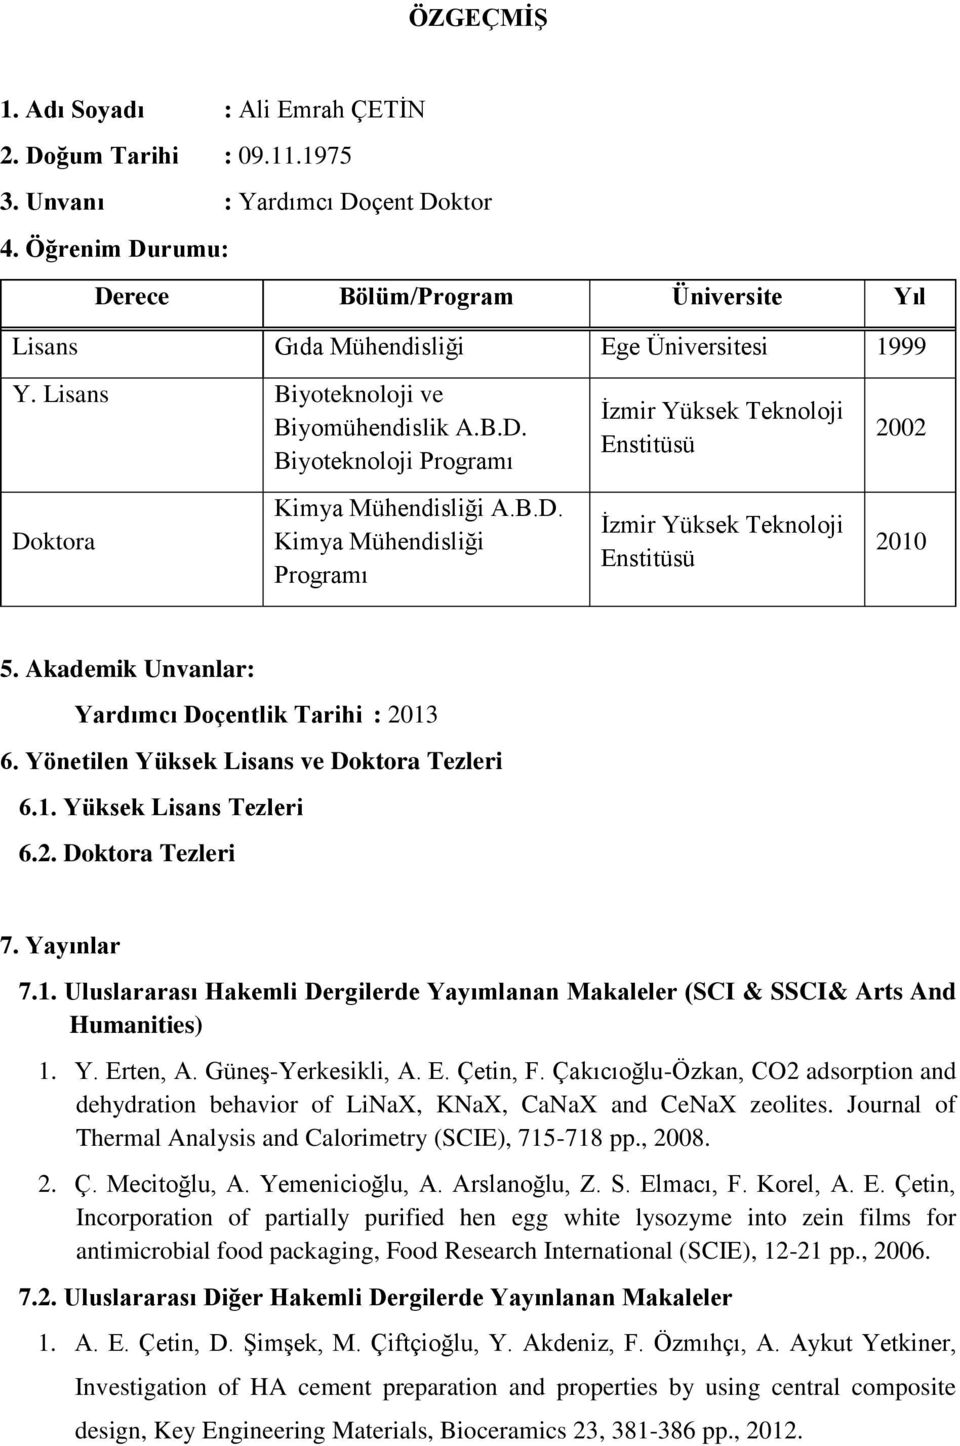 B.D. Kimya Mühendisliği Programı İzmir Yüksek Teknoloji Enstitüsü 2010 5. Akademik Unvanlar: Yardımcı Doçentlik Tarihi : 2013 6. Yönetilen Yüksek Lisans ve Doktora Tezleri 6.1. Yüksek Lisans Tezleri 6.